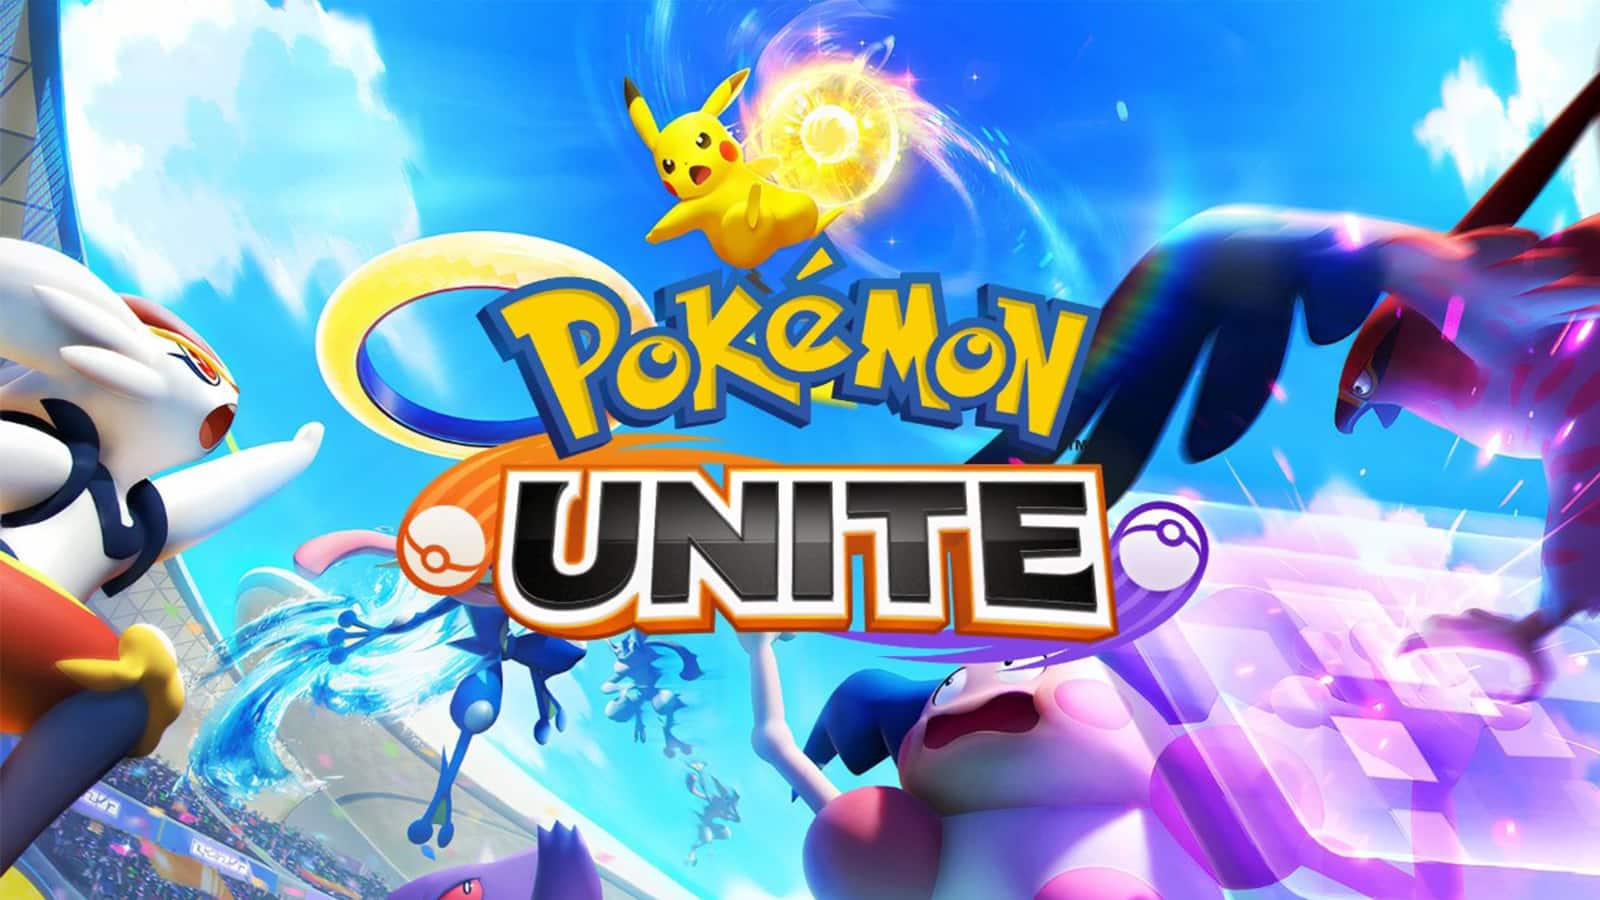 Da Nintendo somente Pokémon Unite leva prêmio na Brazil Game Awards 2021, veja os vencedores